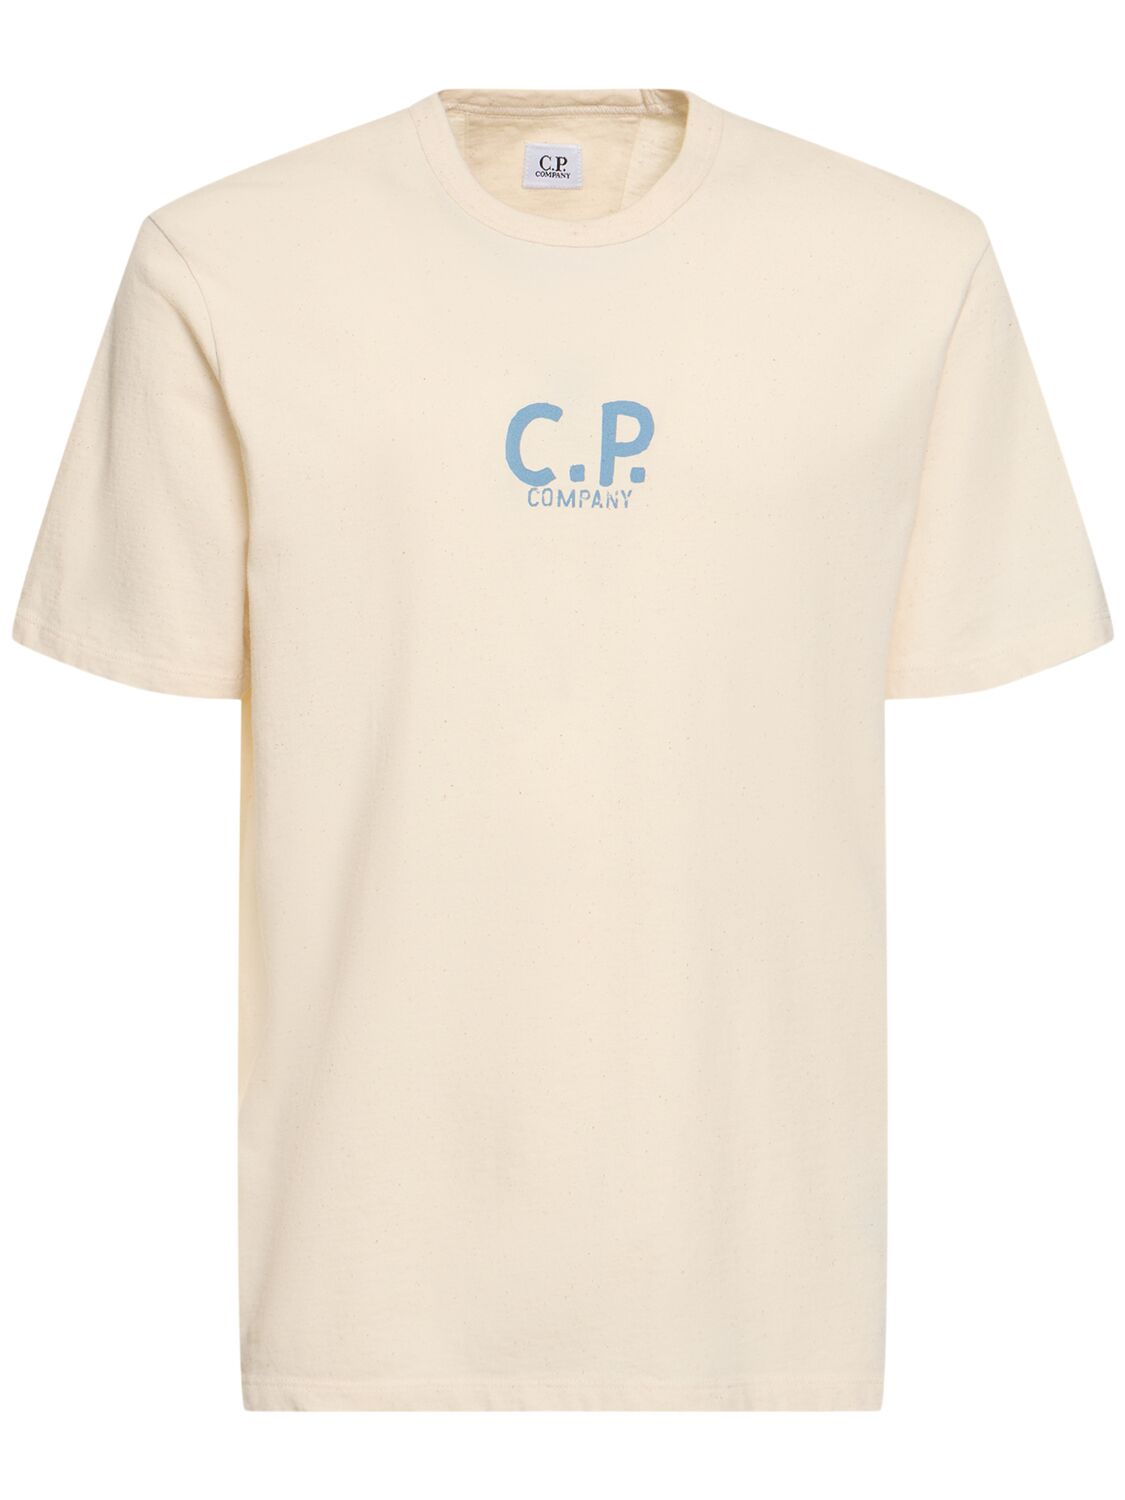 C.p. Company Natural T恤 In Pistachio Shell